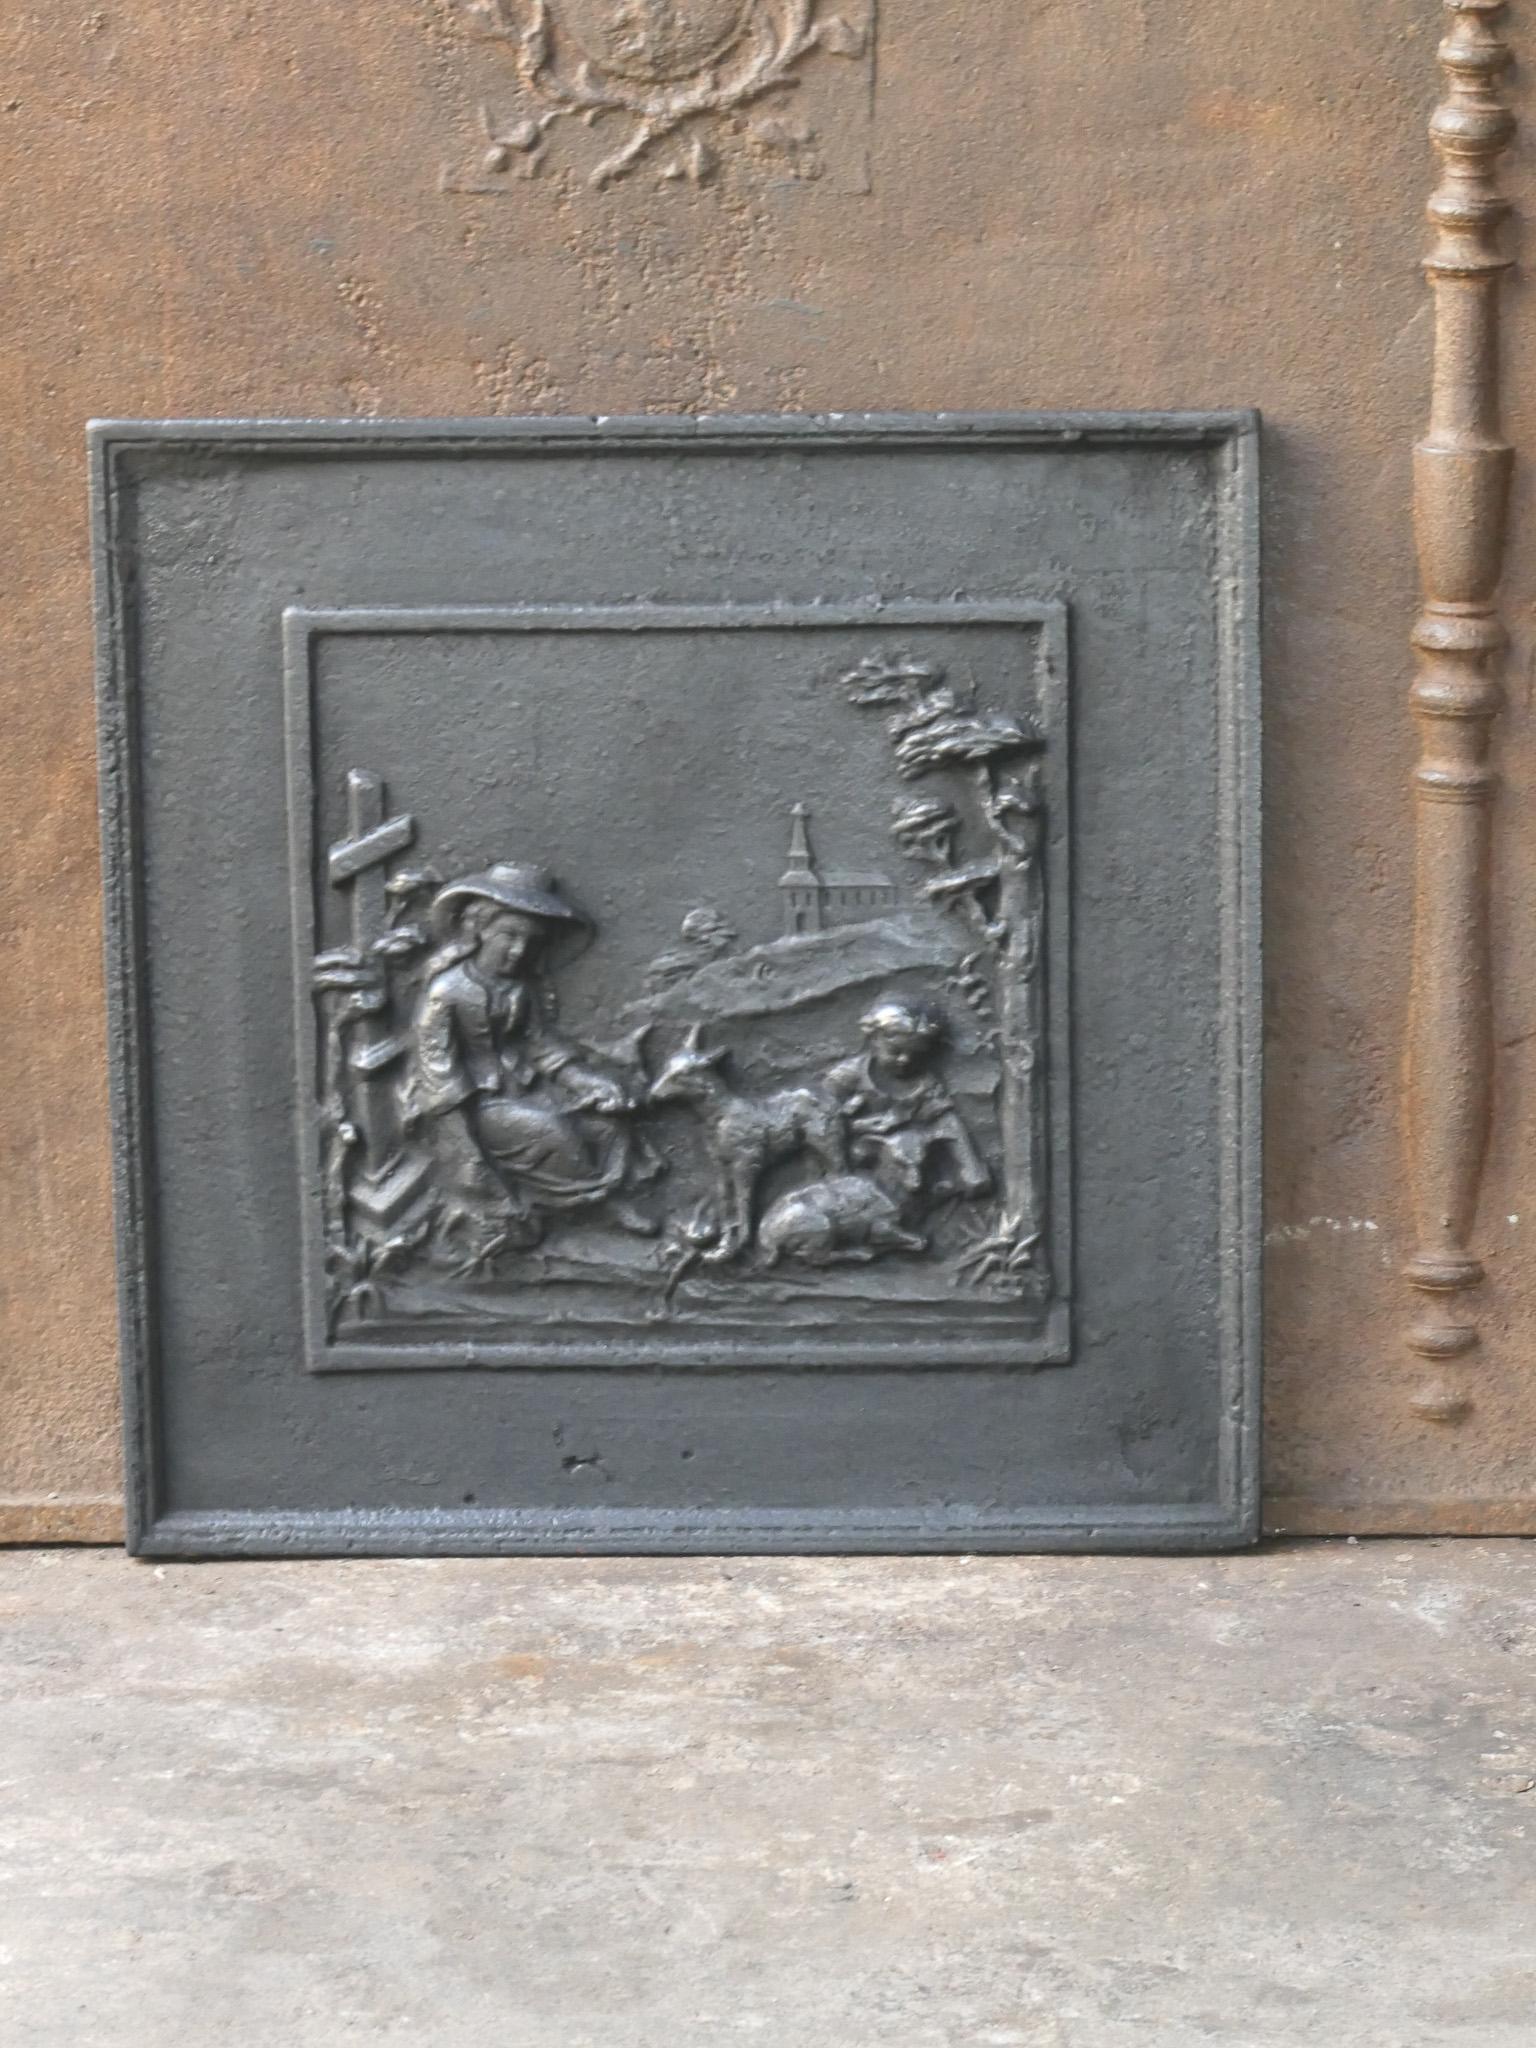 Plaque de cheminée française du XIXe siècle représentant une scène rurale. Le style de la plaque de cheminée est Napoléon III et elle date de cette période.

La plaque de cheminée est en fonte et a une patine brune naturelle. Sur demande, il peut